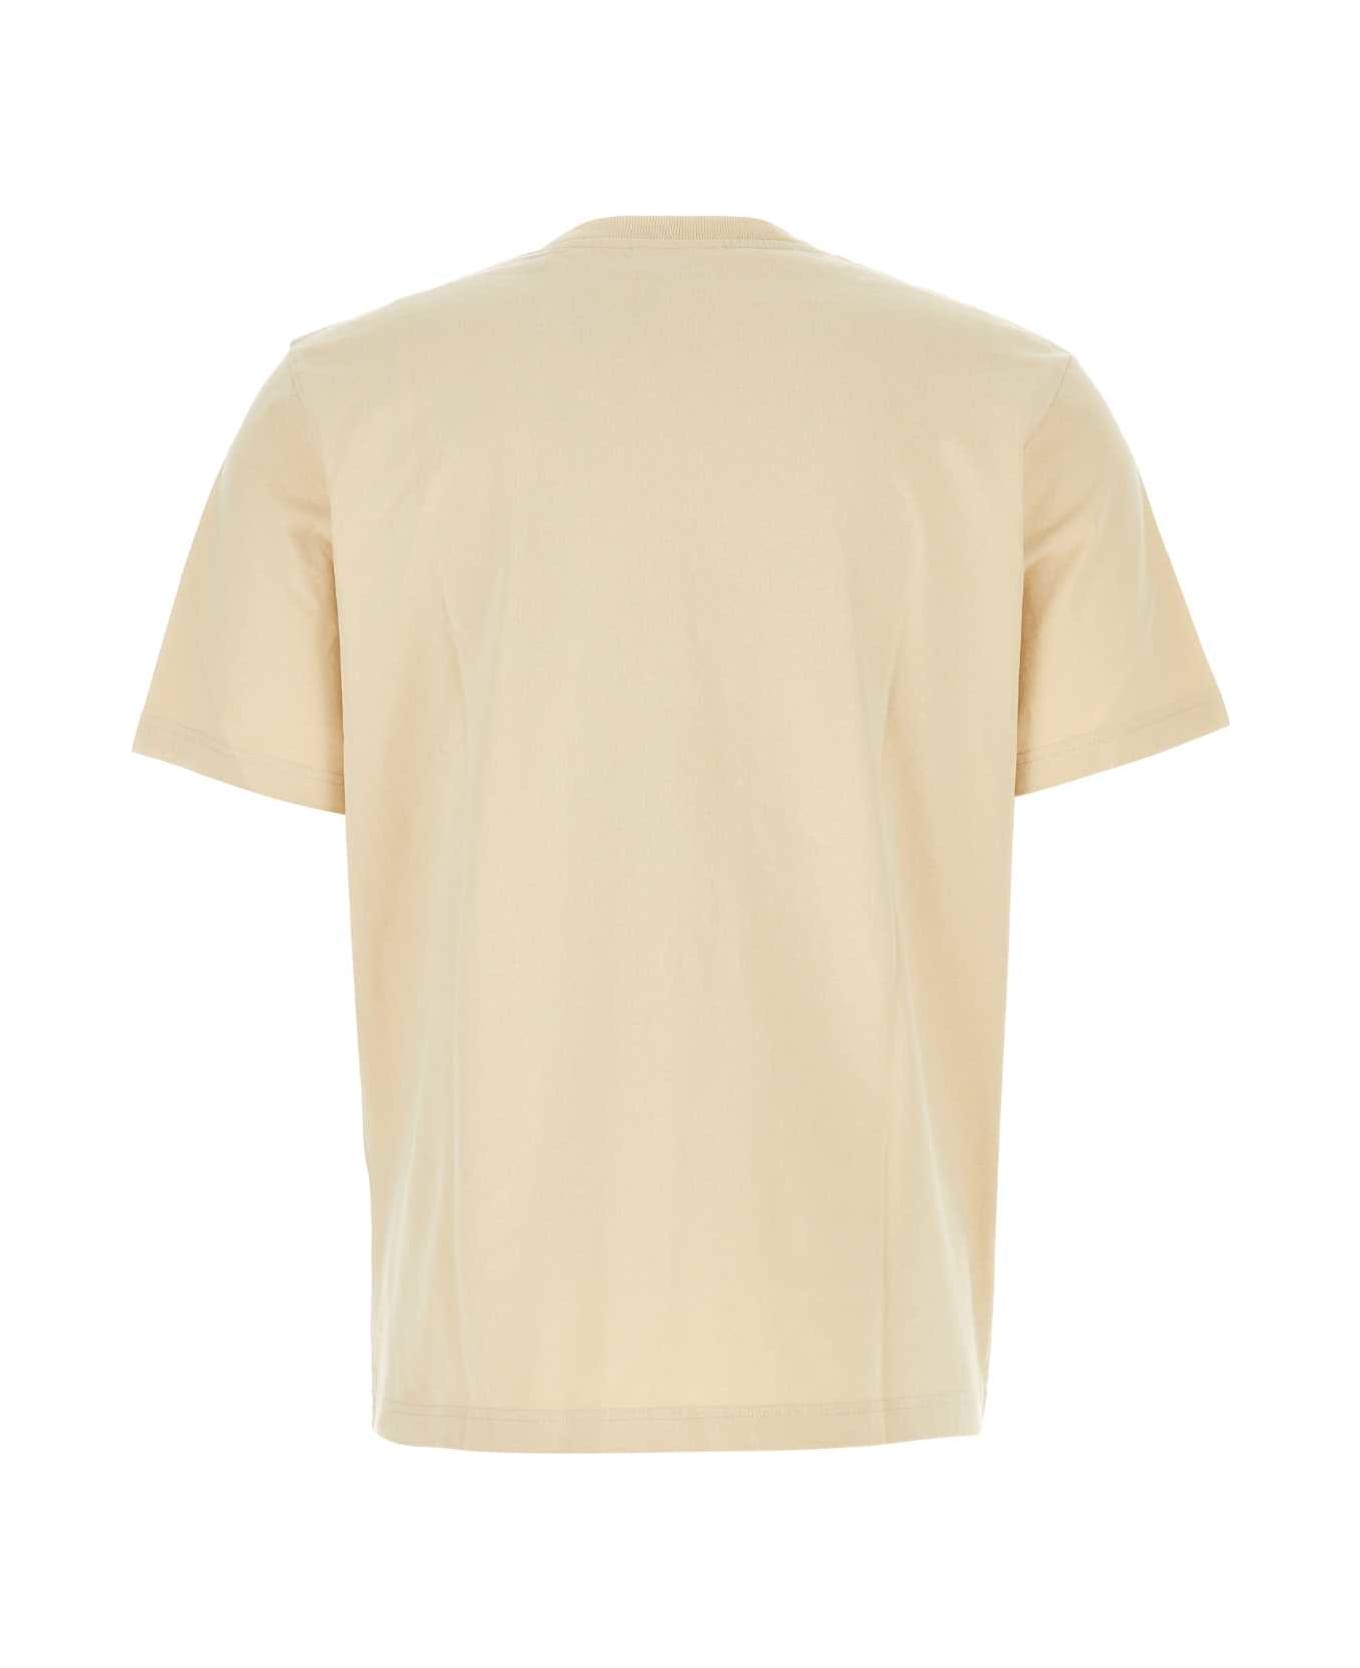 Maison Kitsuné Cream Cotton T-shirt - PAPER